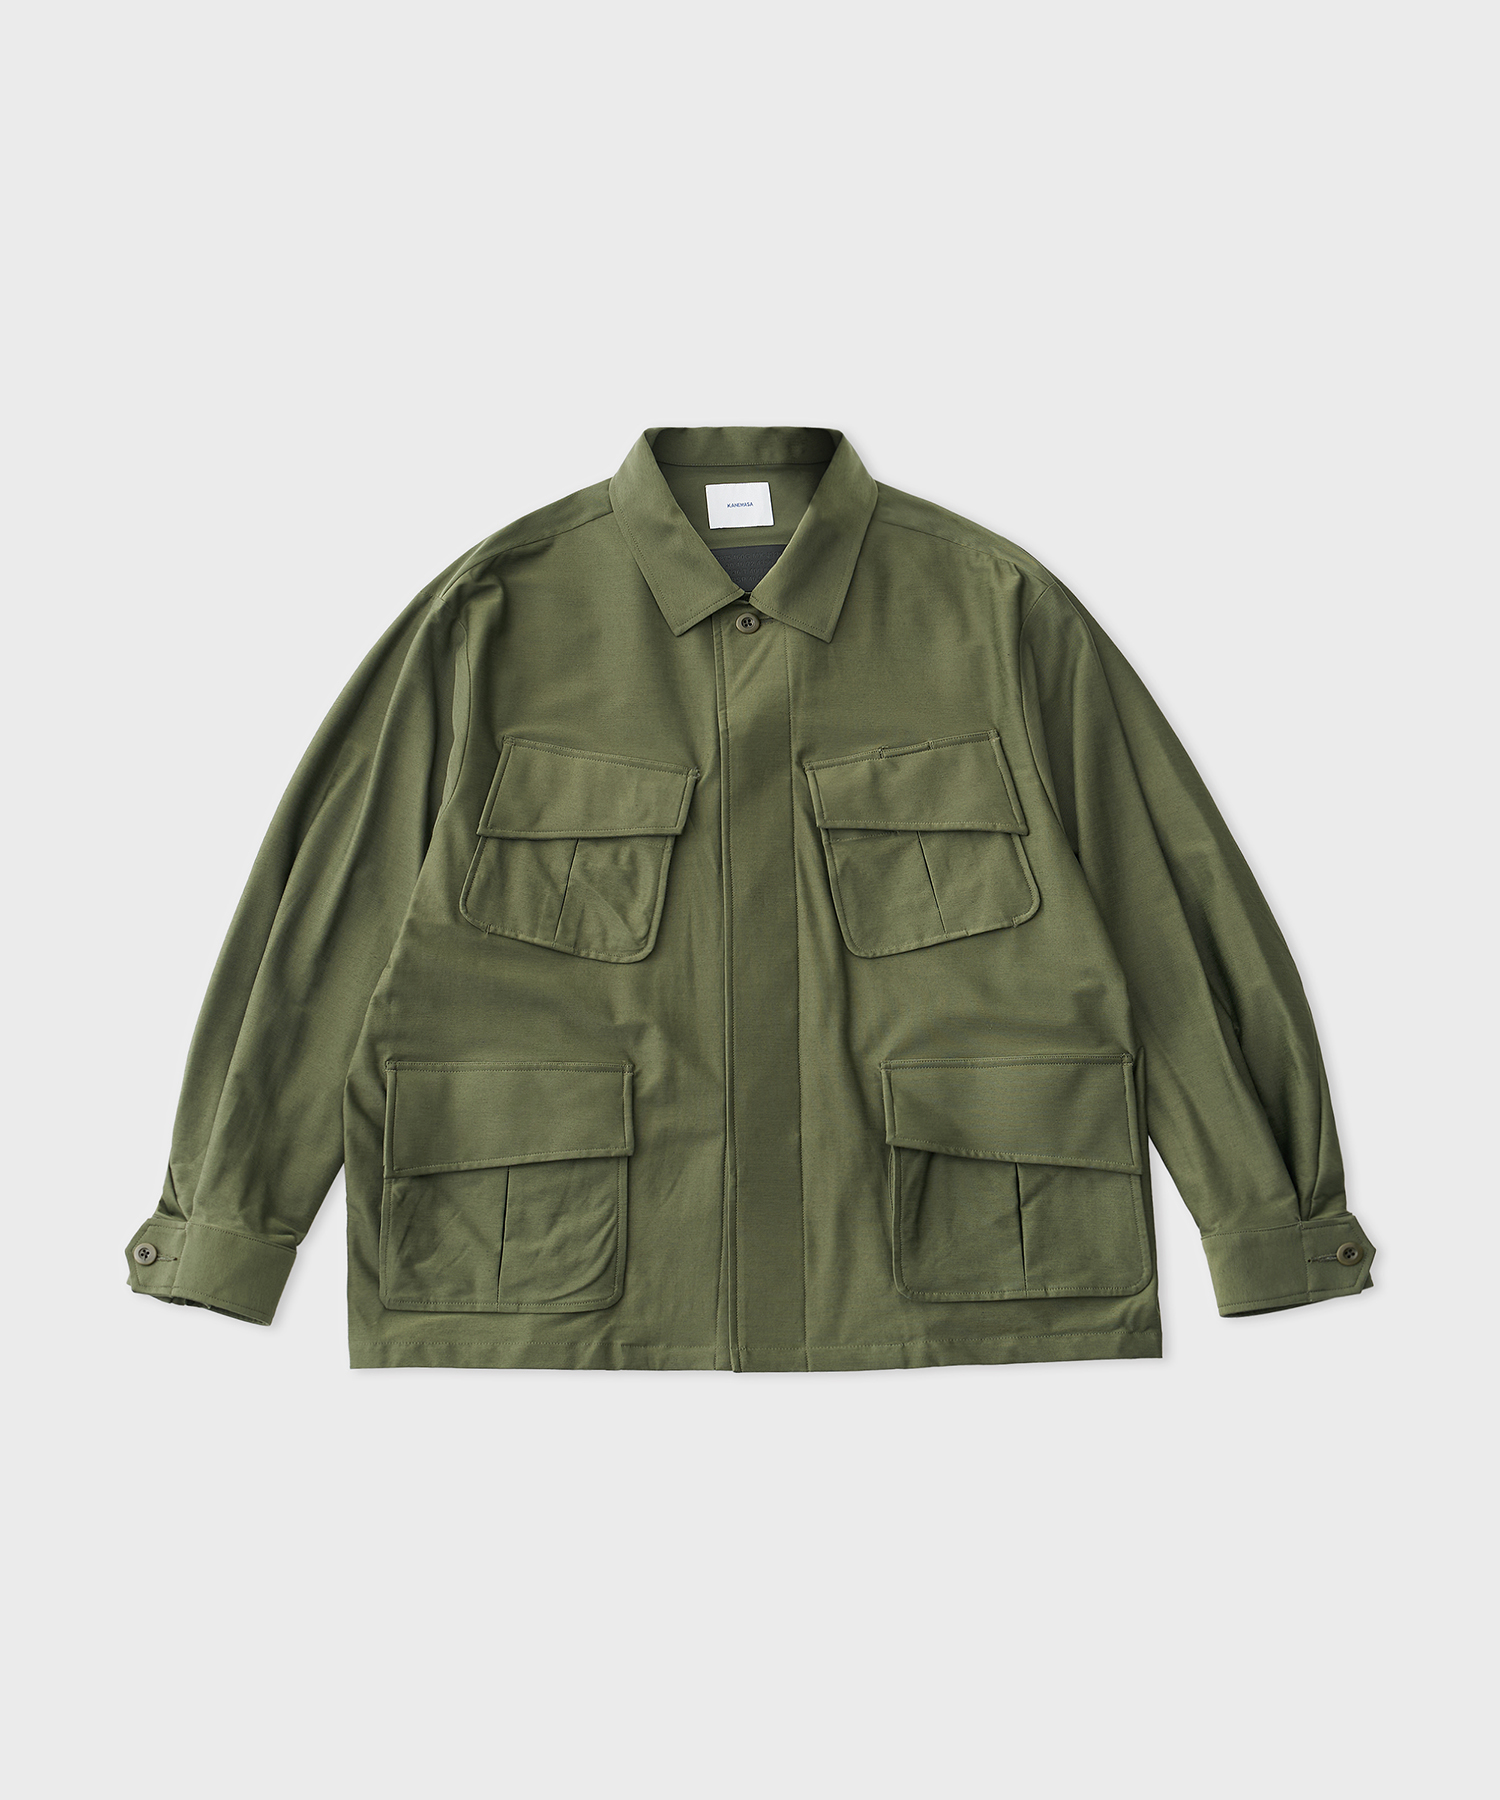 Typewriter High Gauge Jersey Fatig Jacket (Military Green)